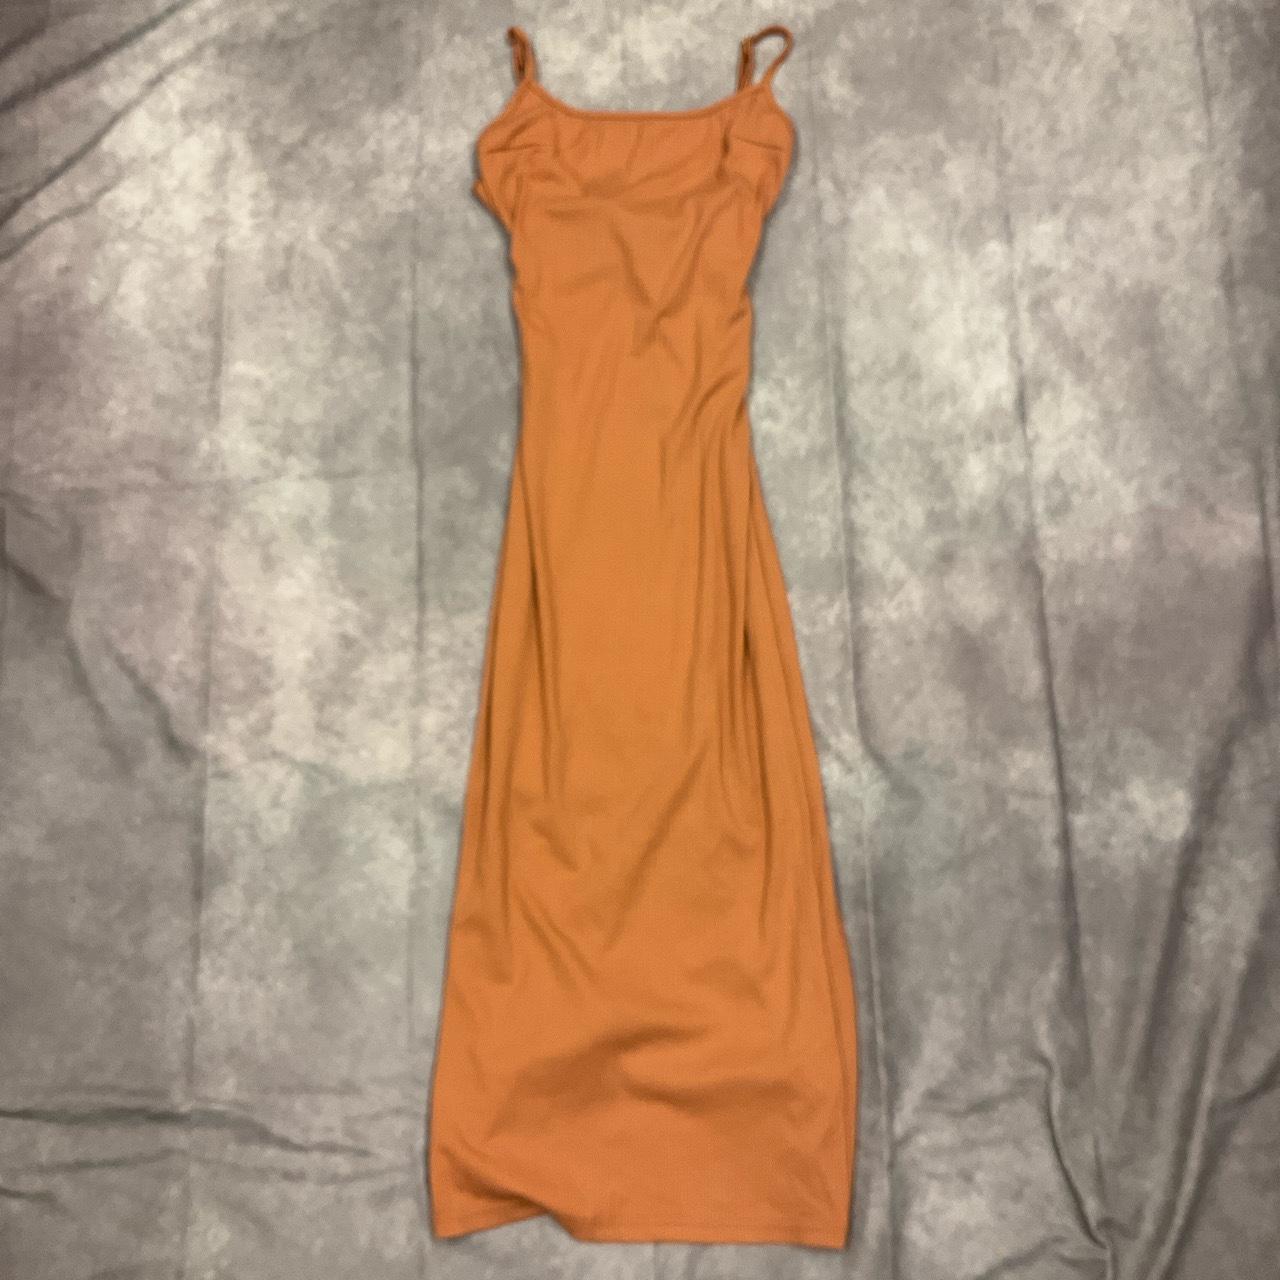 Orange luxedo dress - Depop